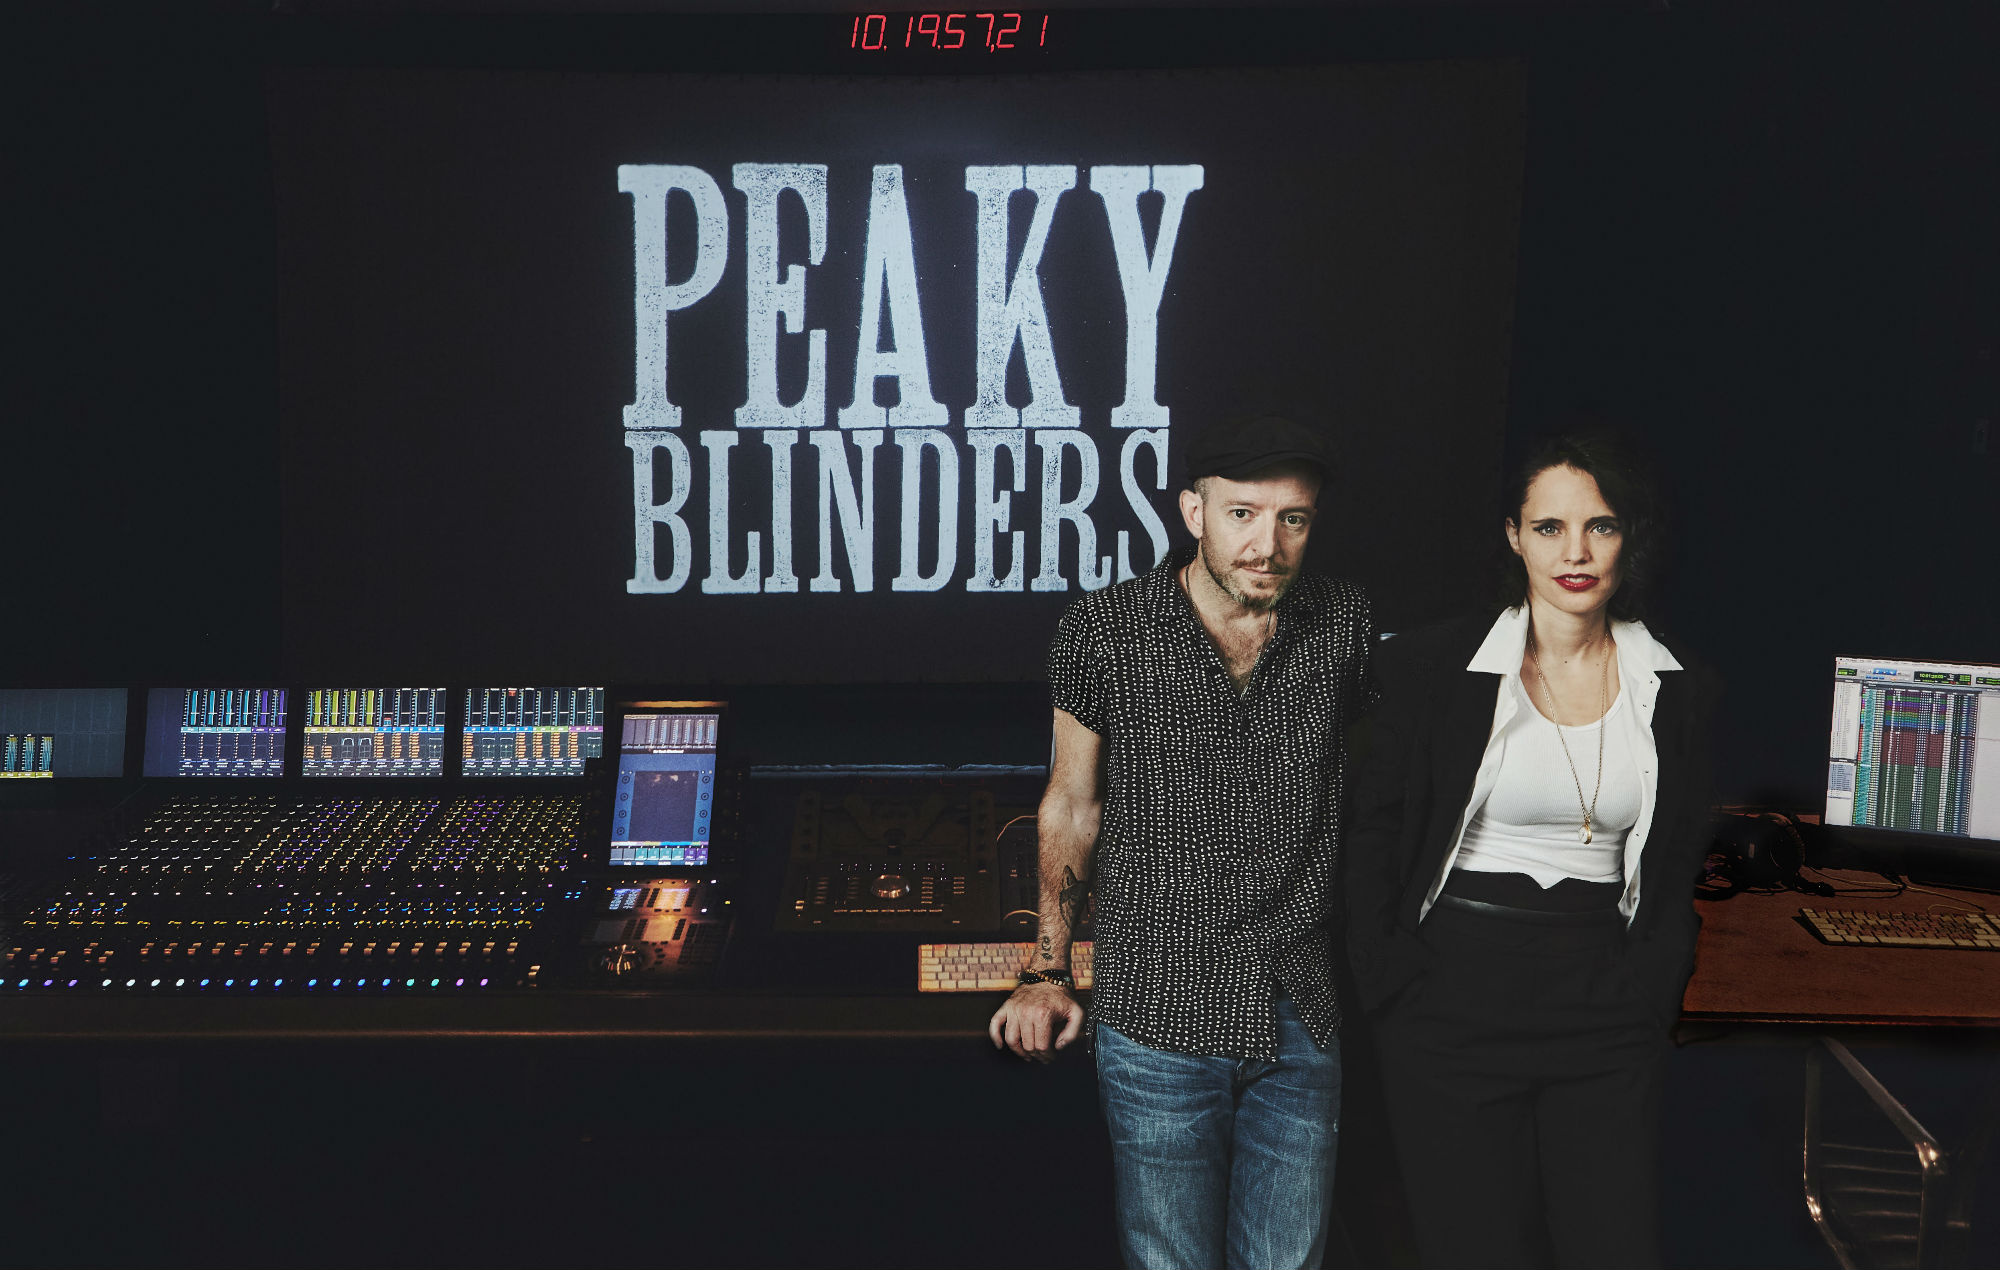 Anna Calvi, Peaky Blinders inspired, 2000x1270 HD Desktop